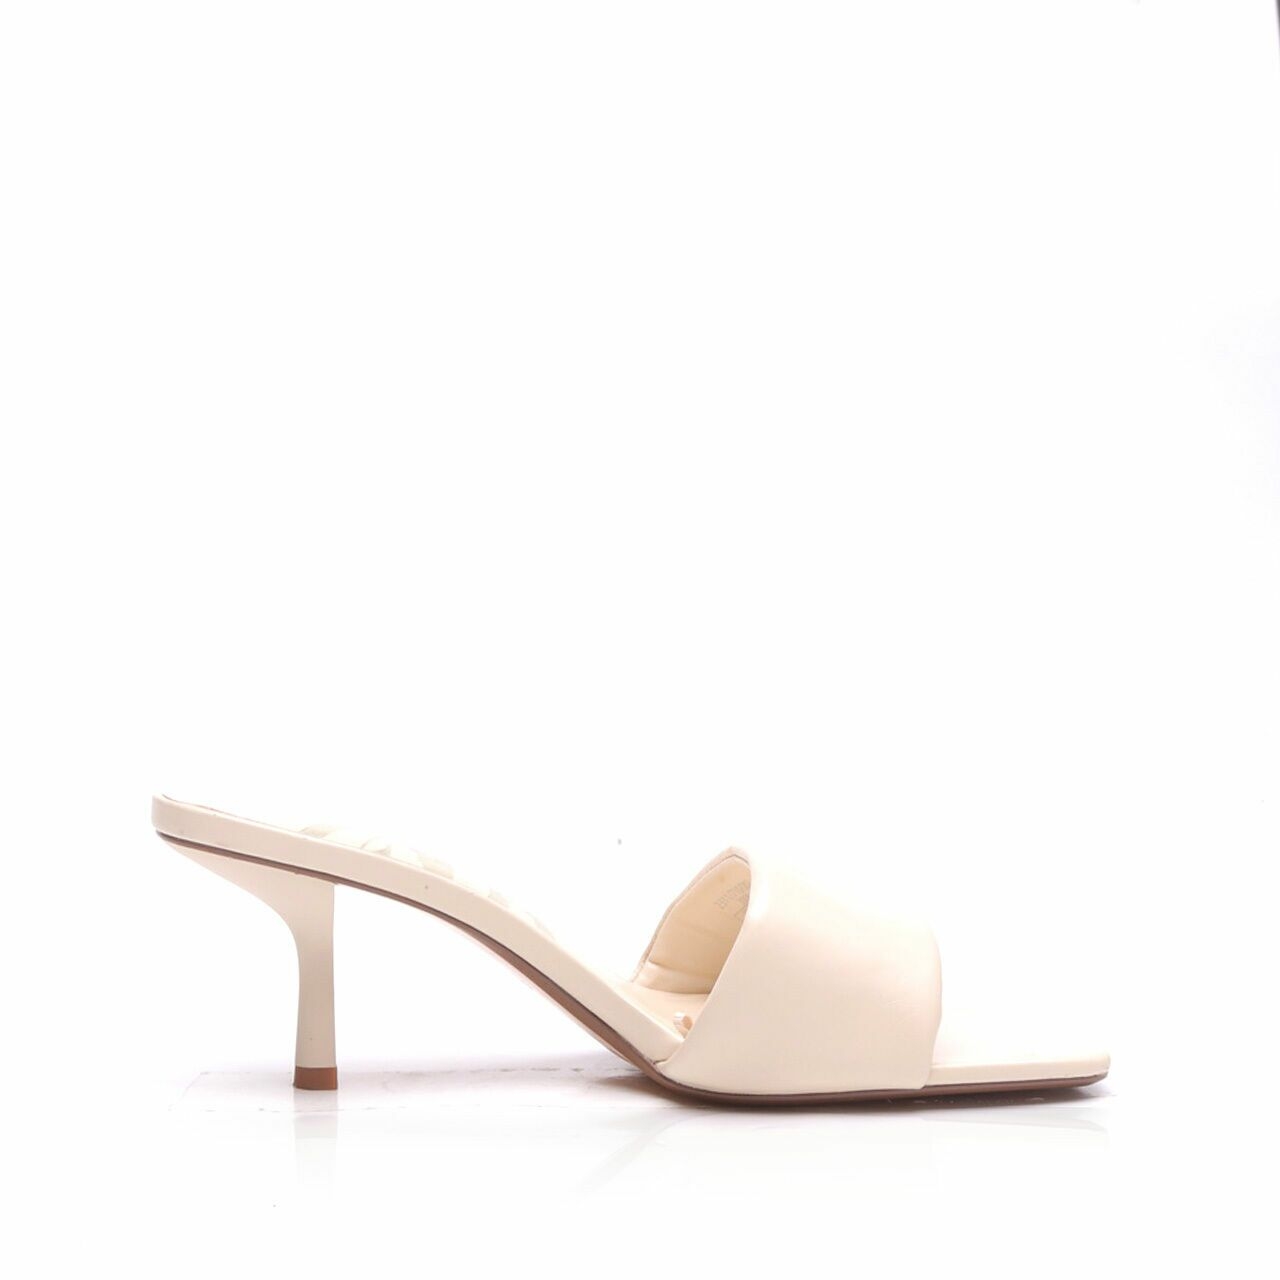 Zara Off White Heels